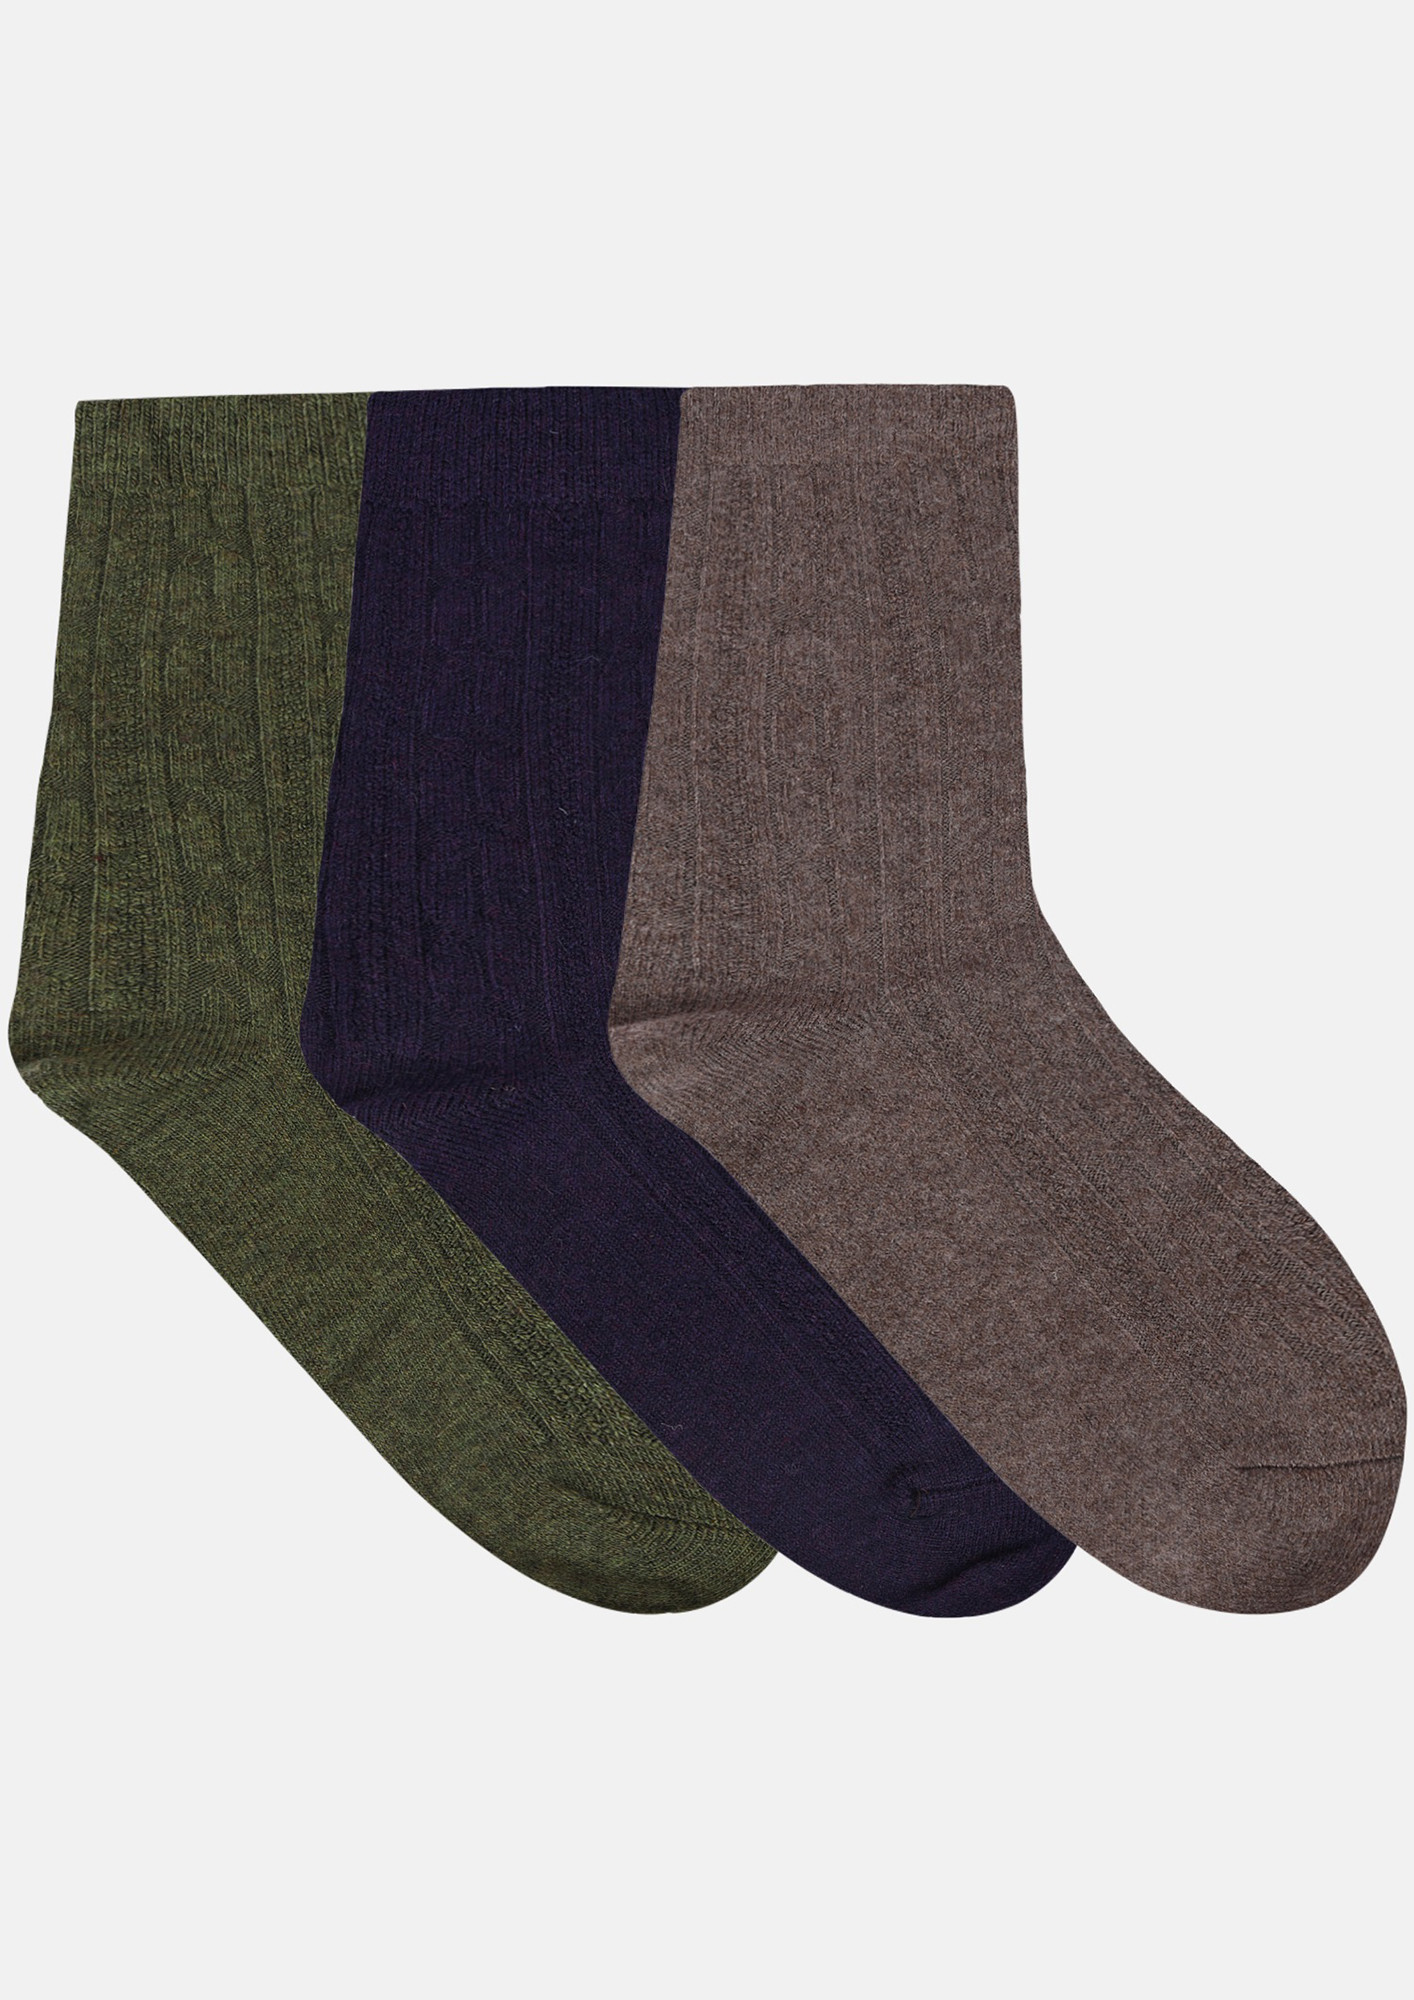 NEXT2SKIN Women's Woollen Regular length Socks (Pack of 3) (Green,Navy Blue,Skin)